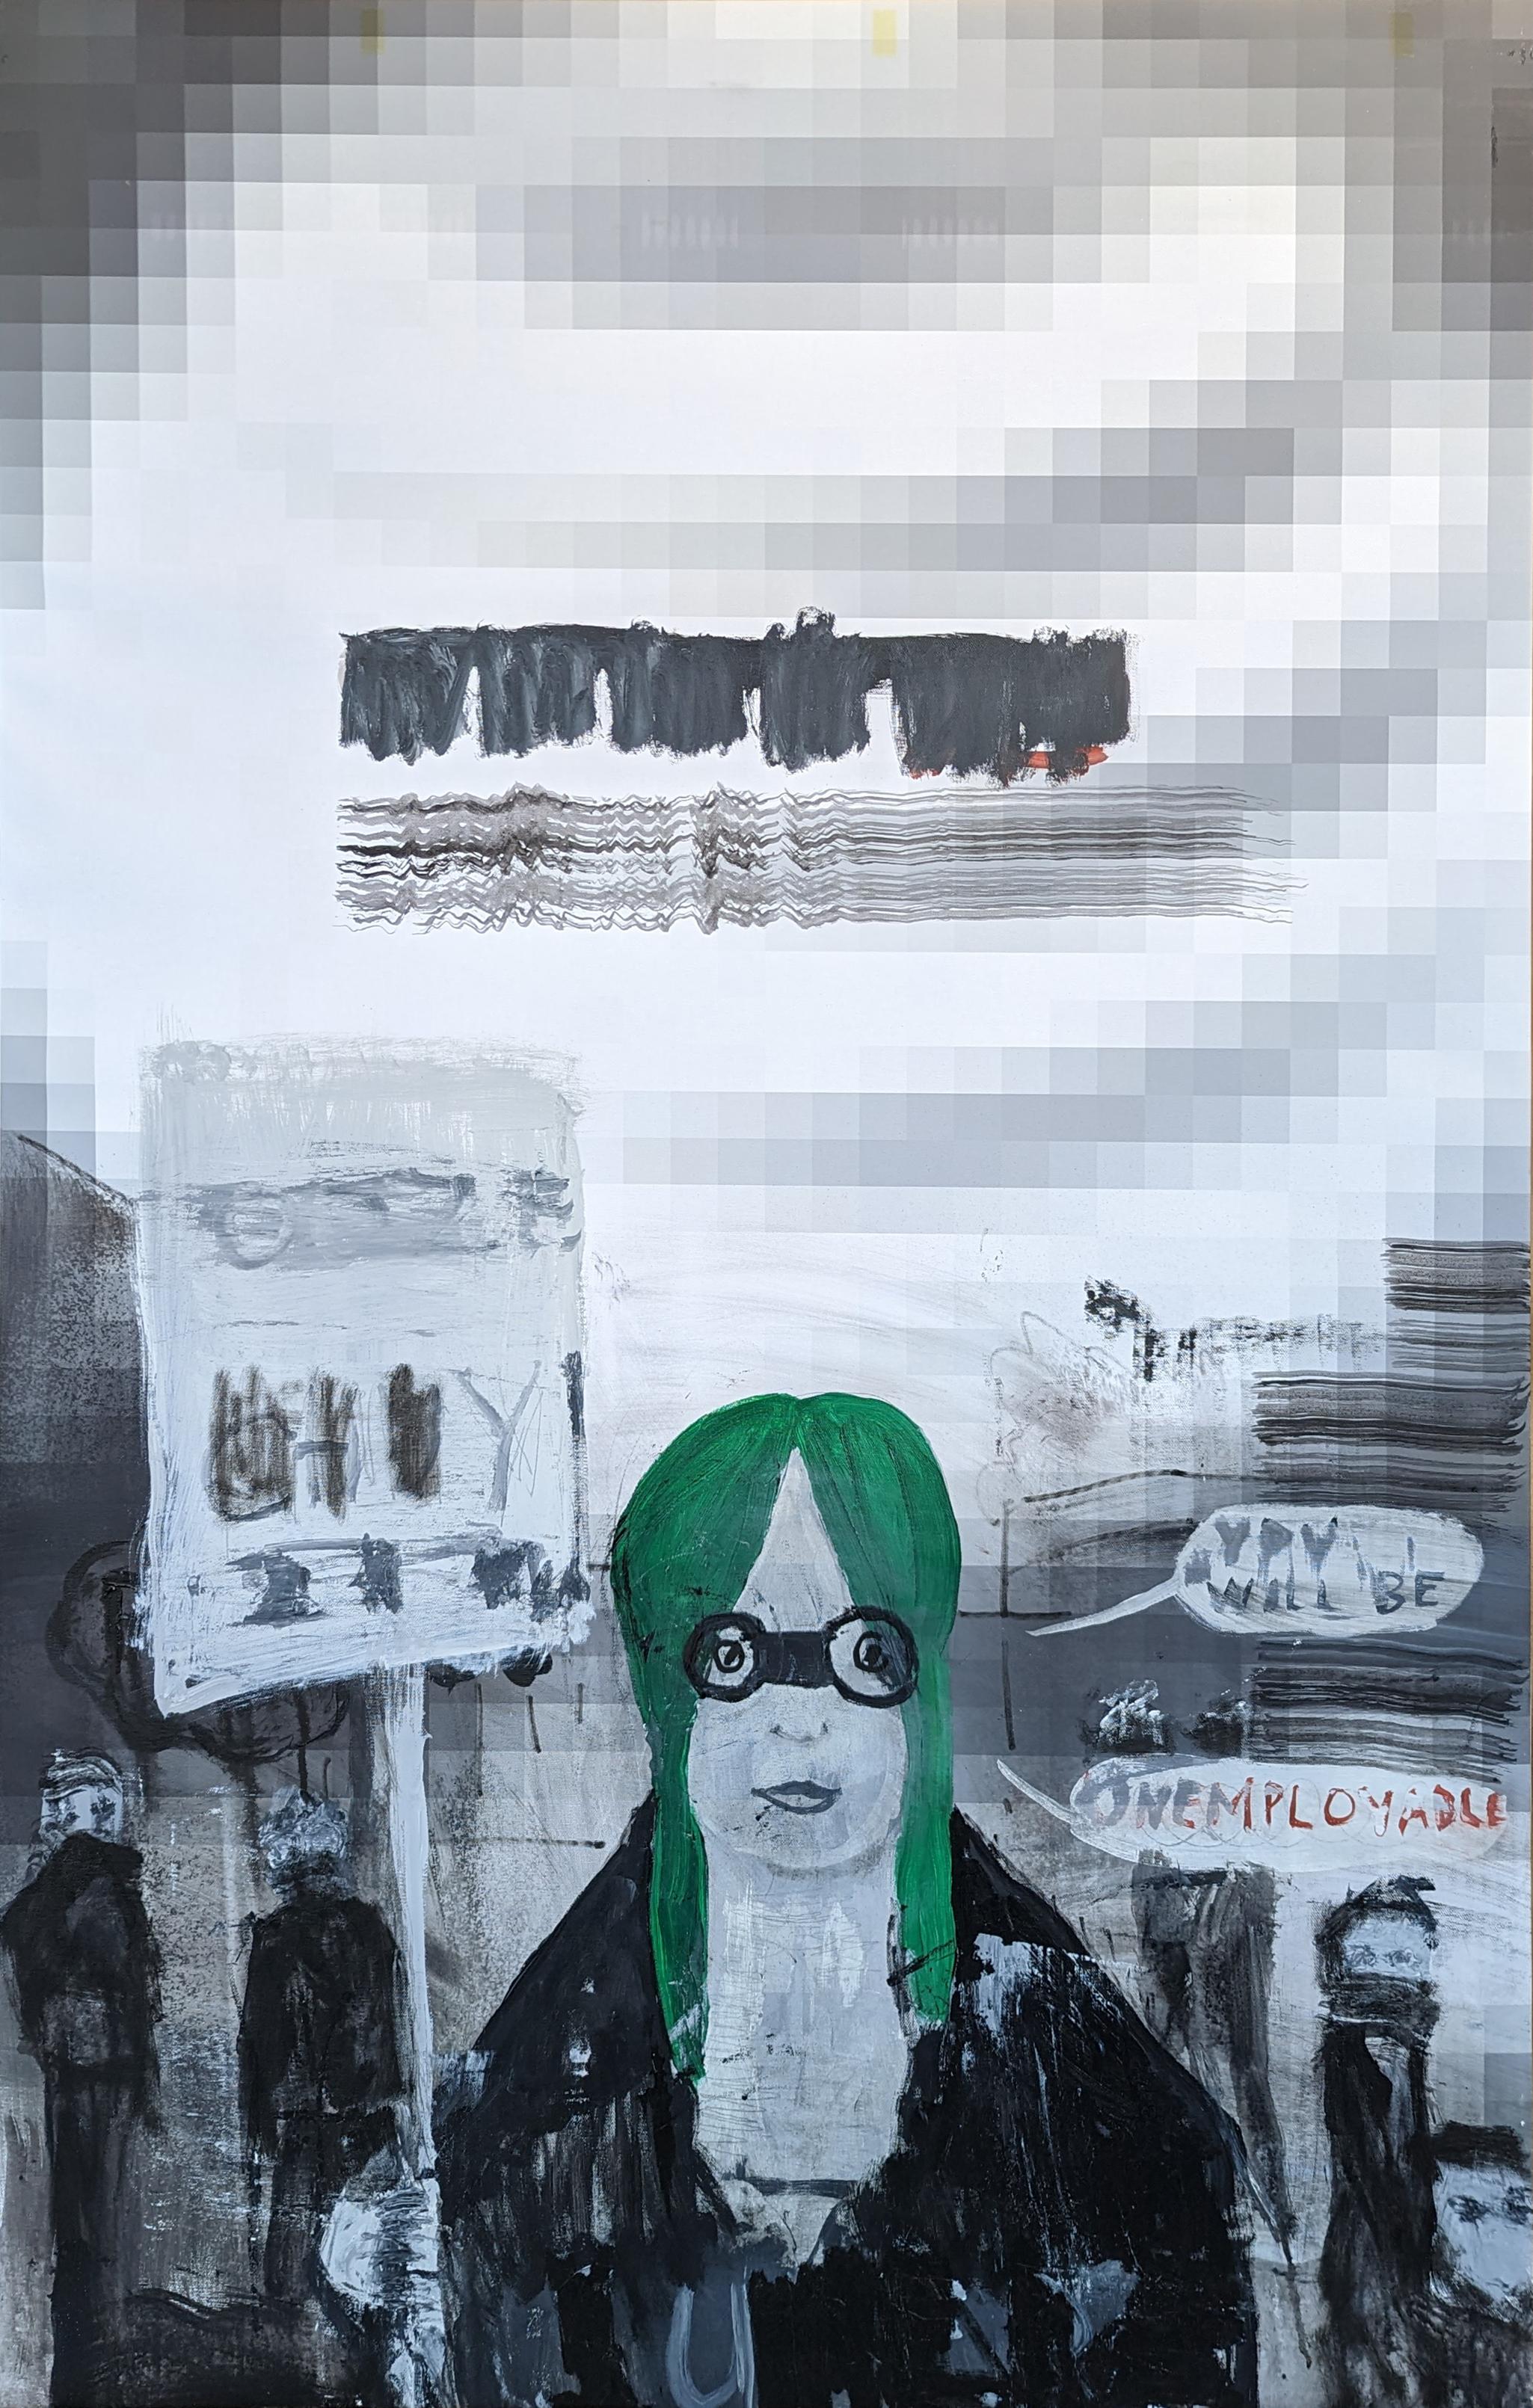 Mark Flood Abstract Painting – Abstraktes, figuratives Gemälde „Globalistisches Mädchen“ in Schwarz, Grau und Grün